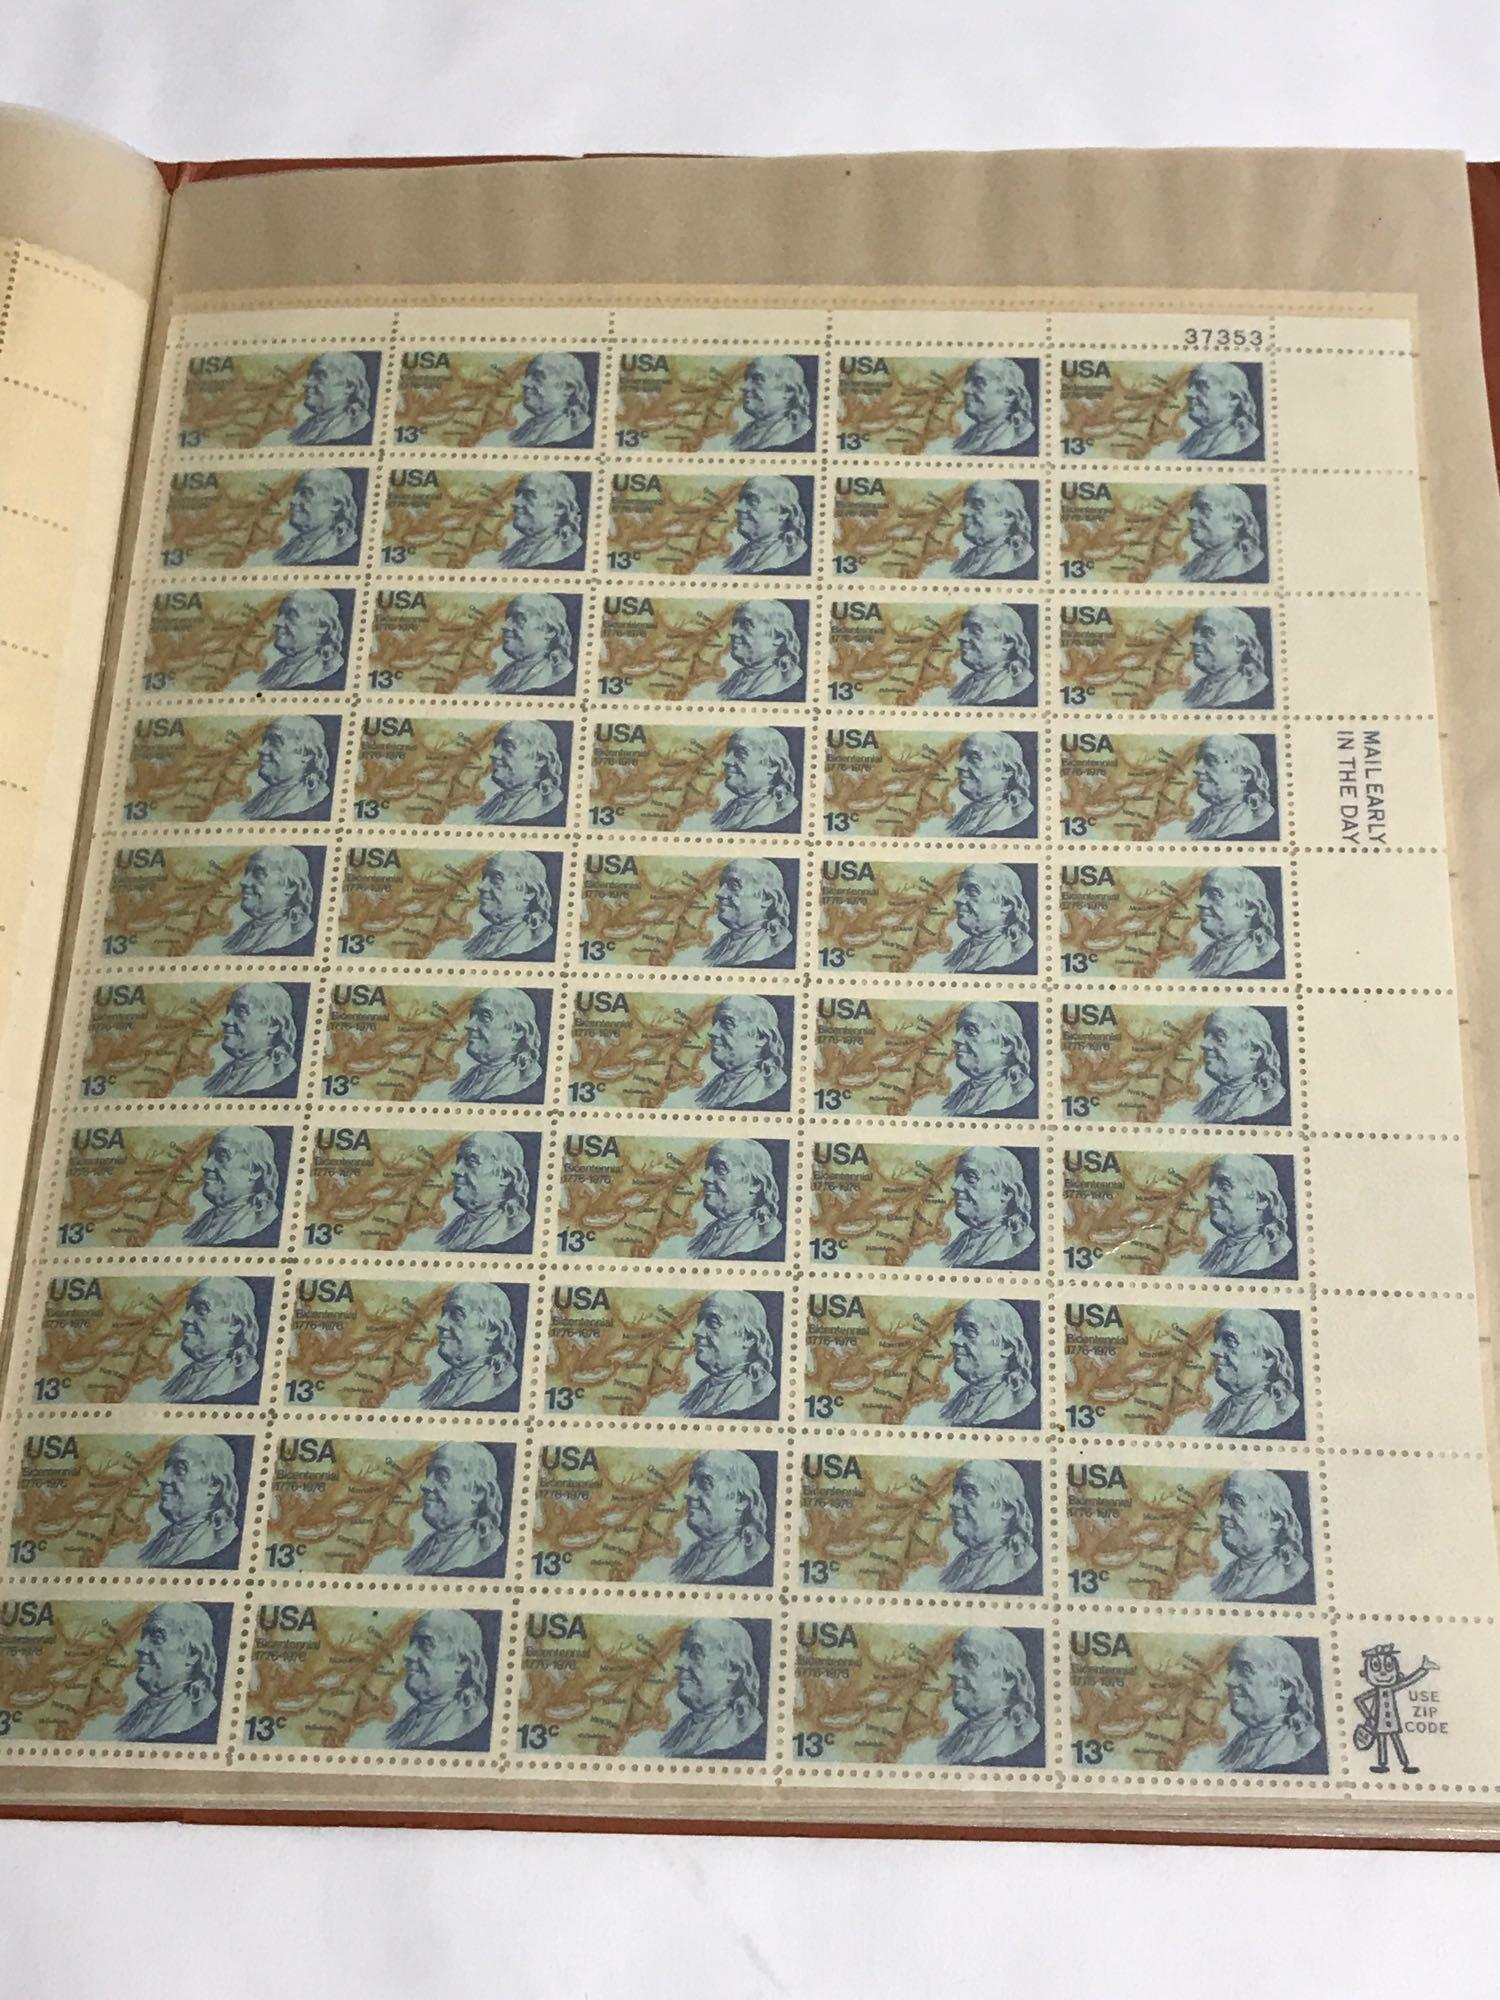 Book of 19 Uncut Stamp Block Sheets